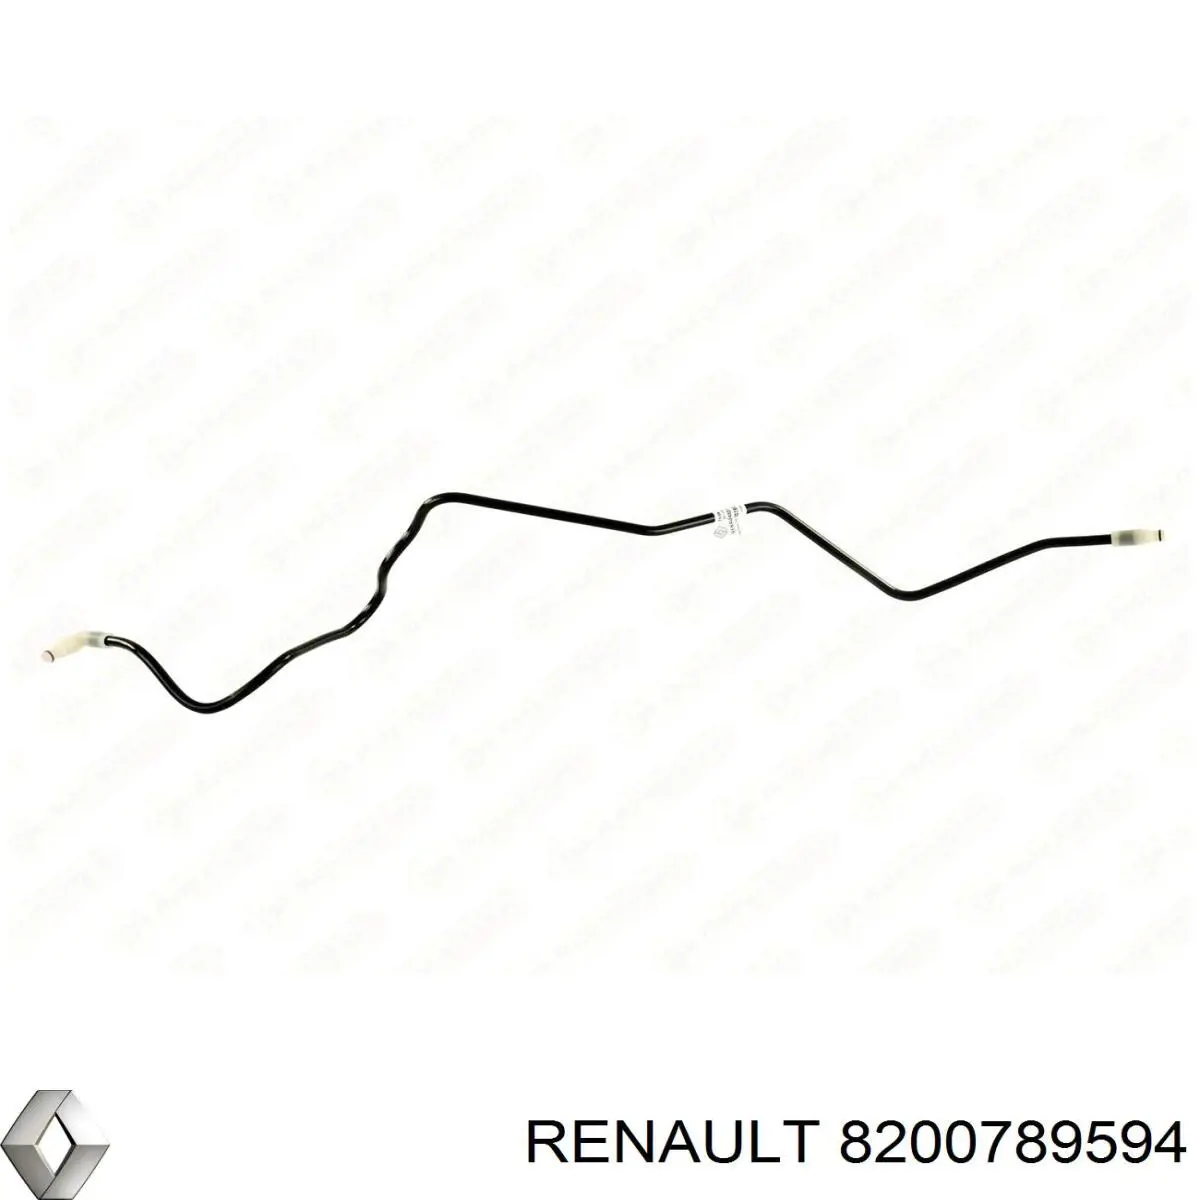 Conducto de embrague para Renault Master (EV, HV, UV)